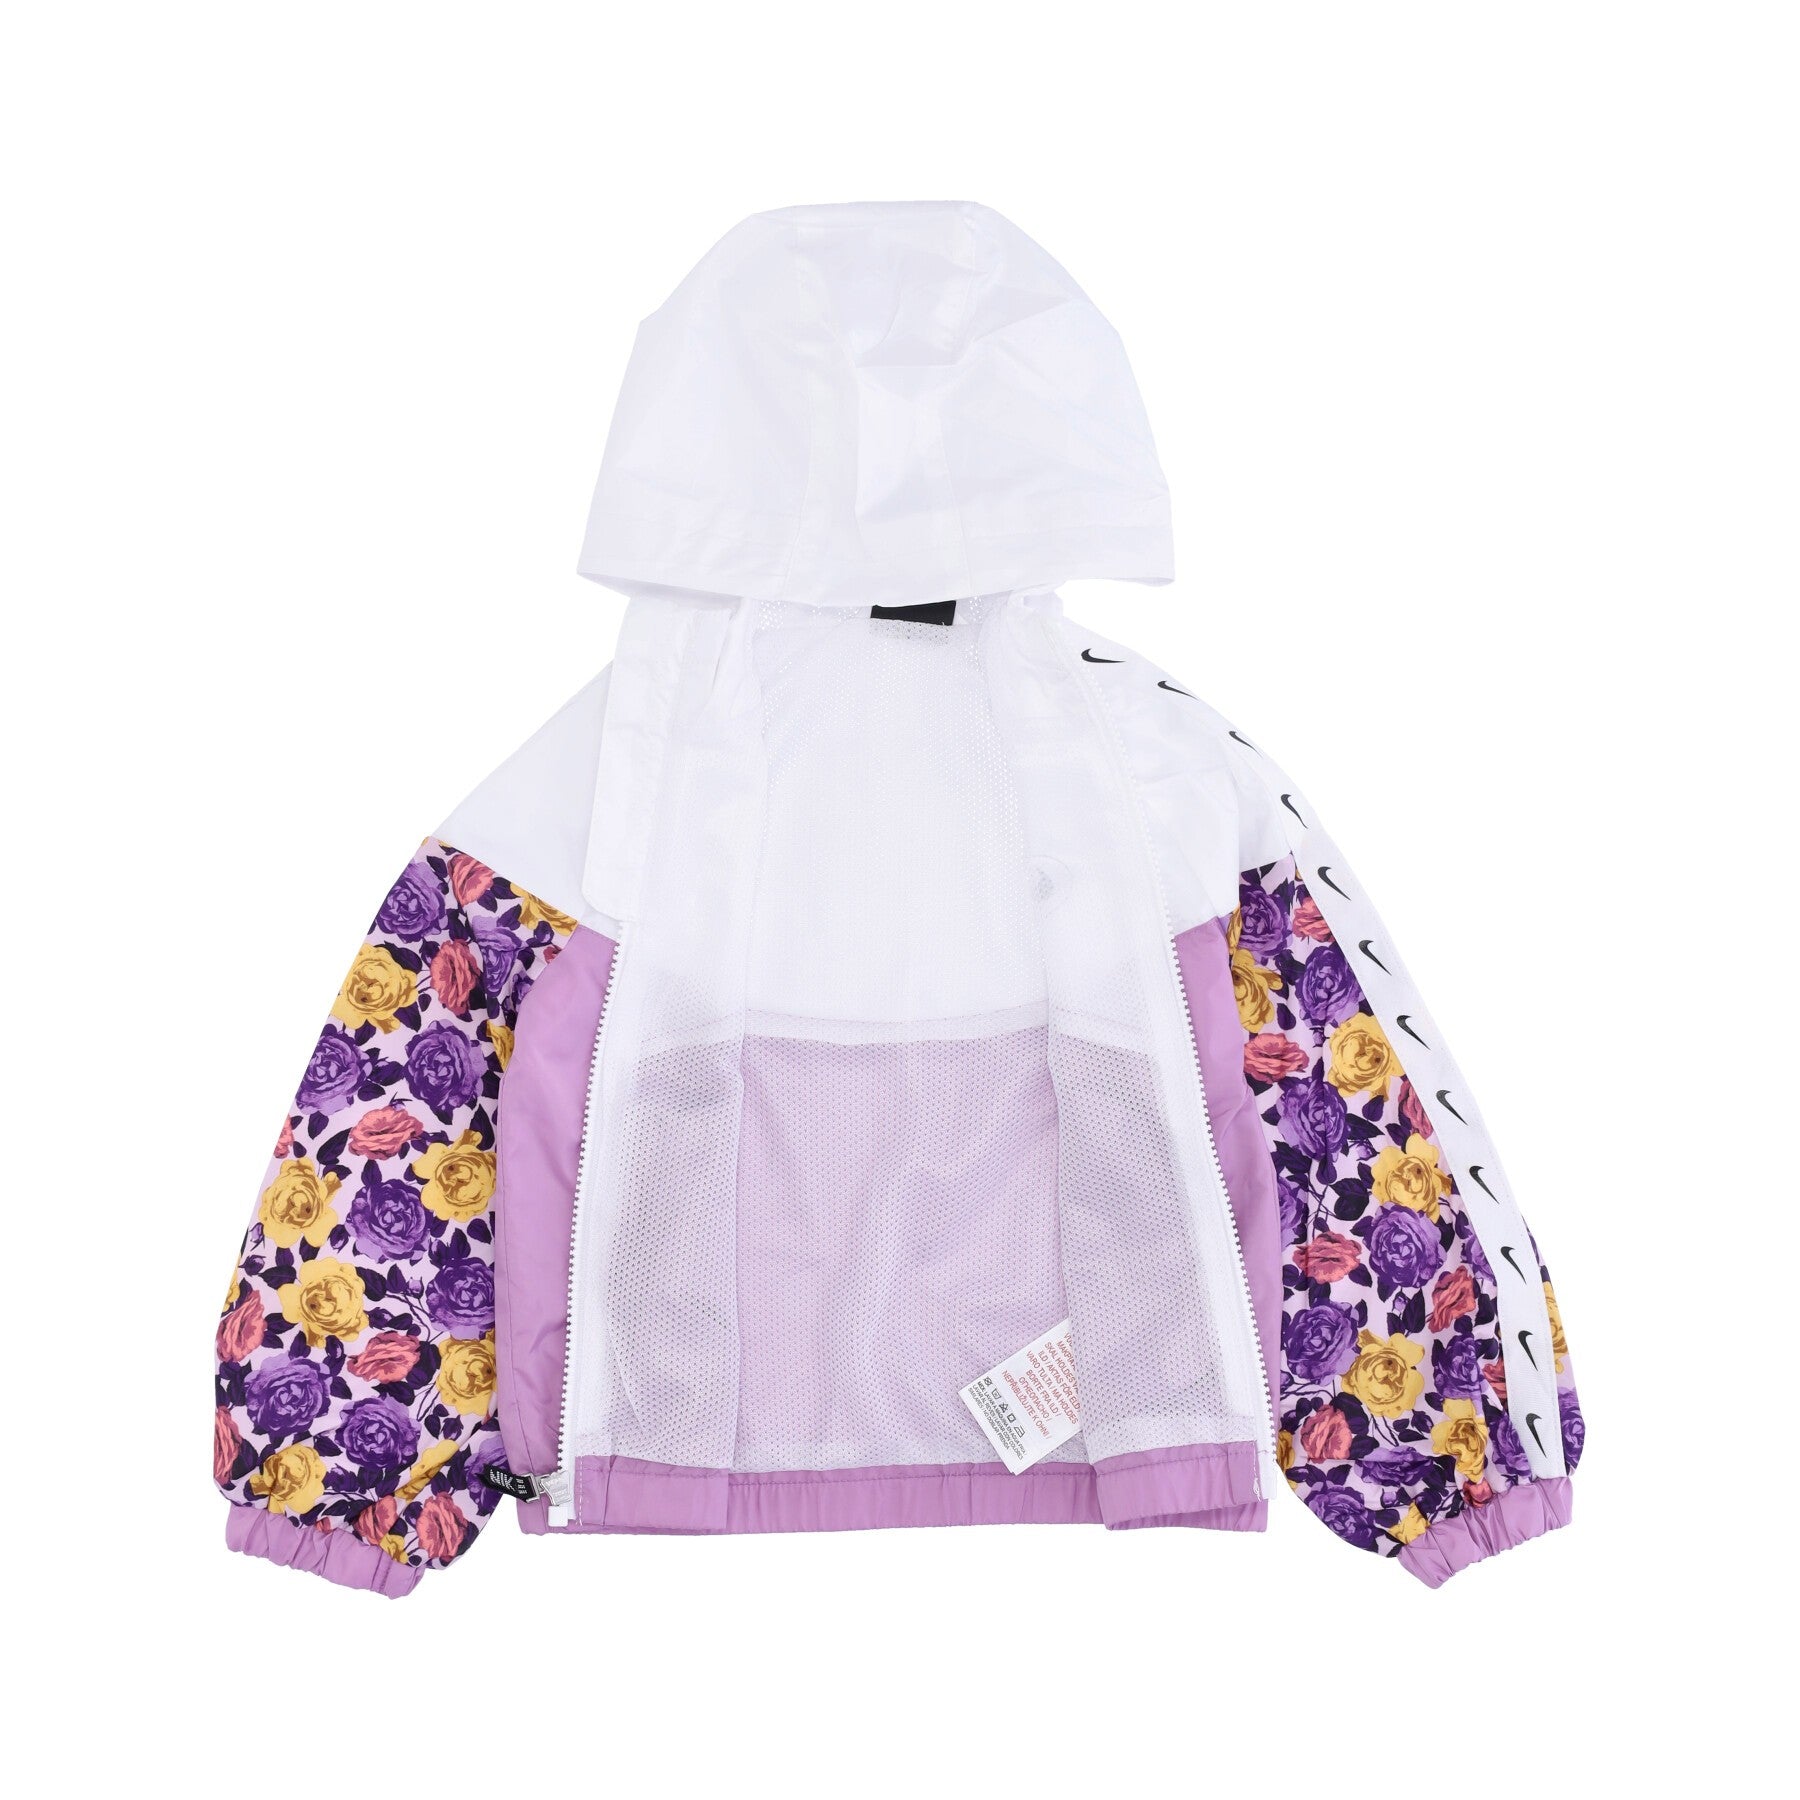 Windbreaker Girl Floral Windrunner Jacket White/multi